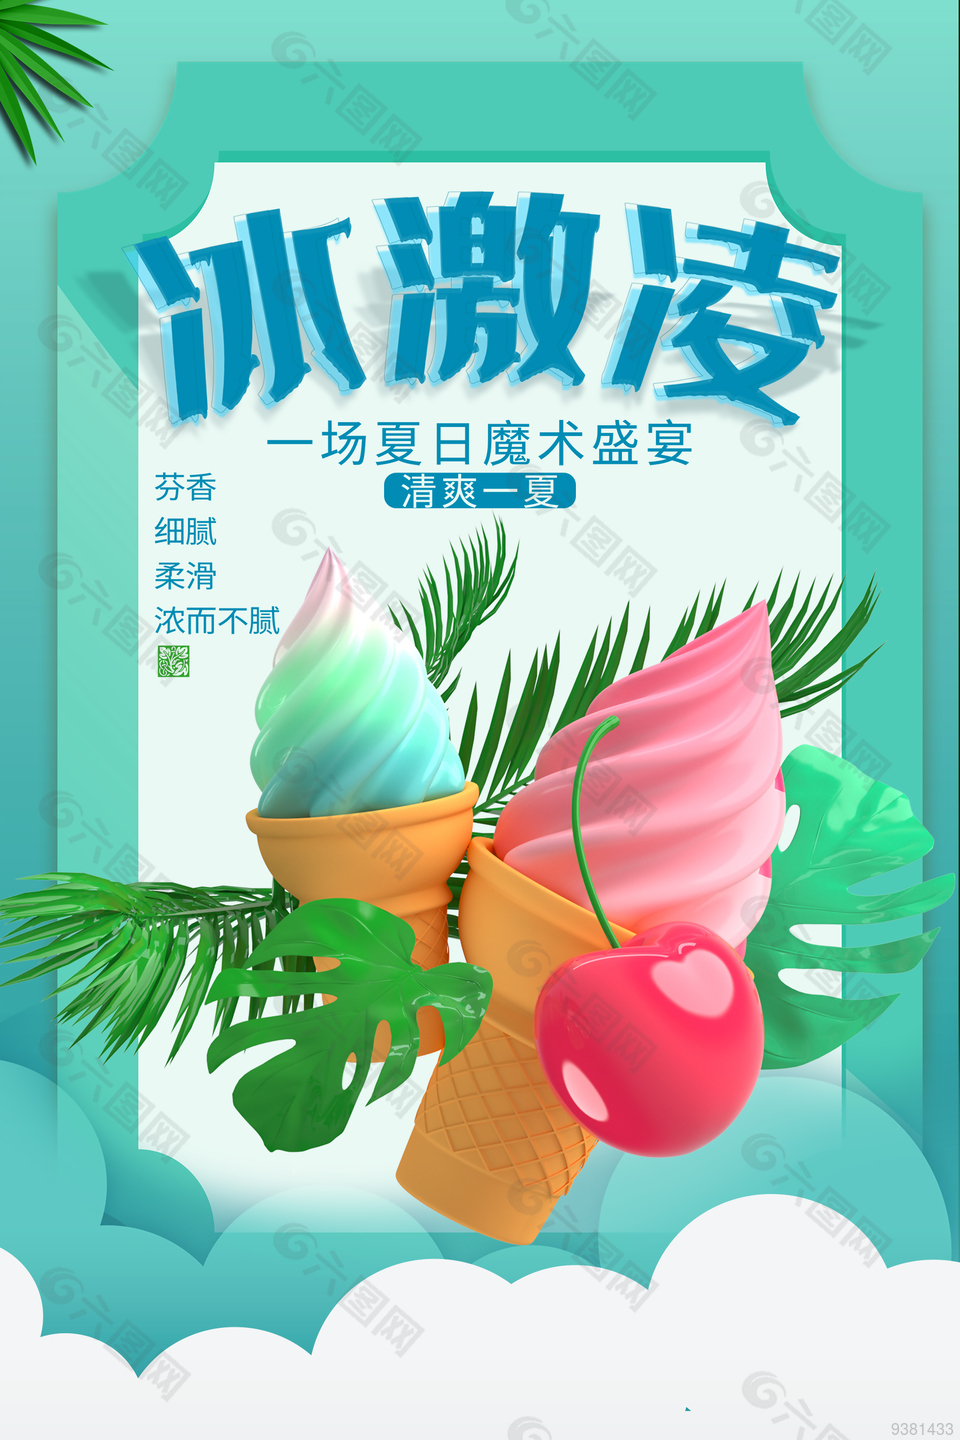 夏日清爽冰淇淋海报设计